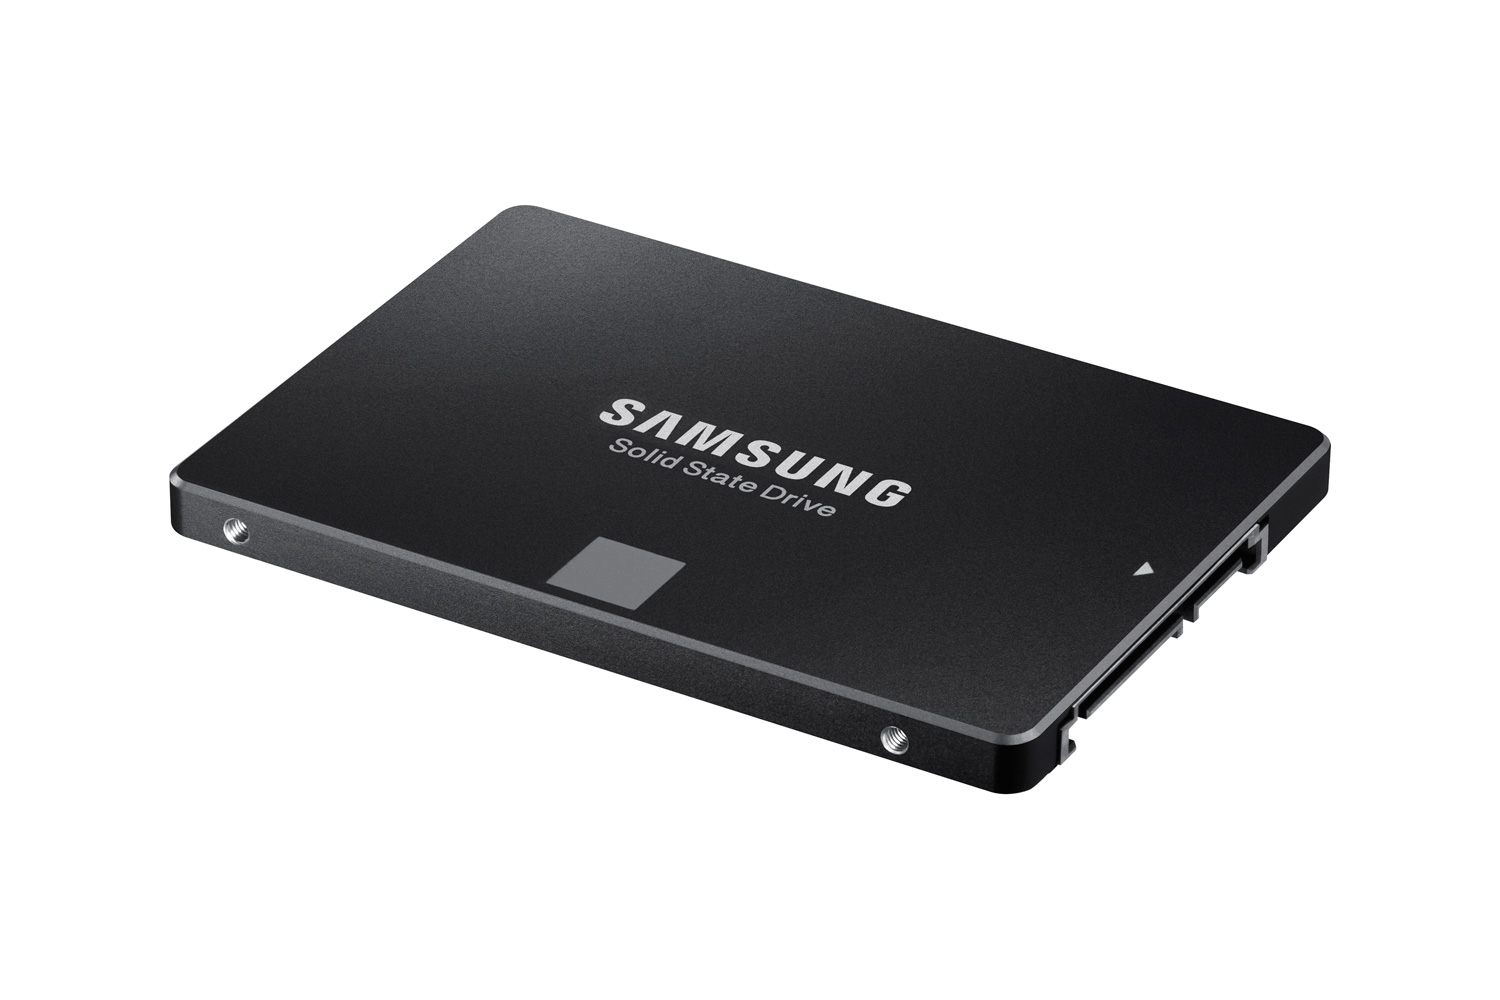 【新品未使用】500GB SSD 2.5インチ 850 EVO